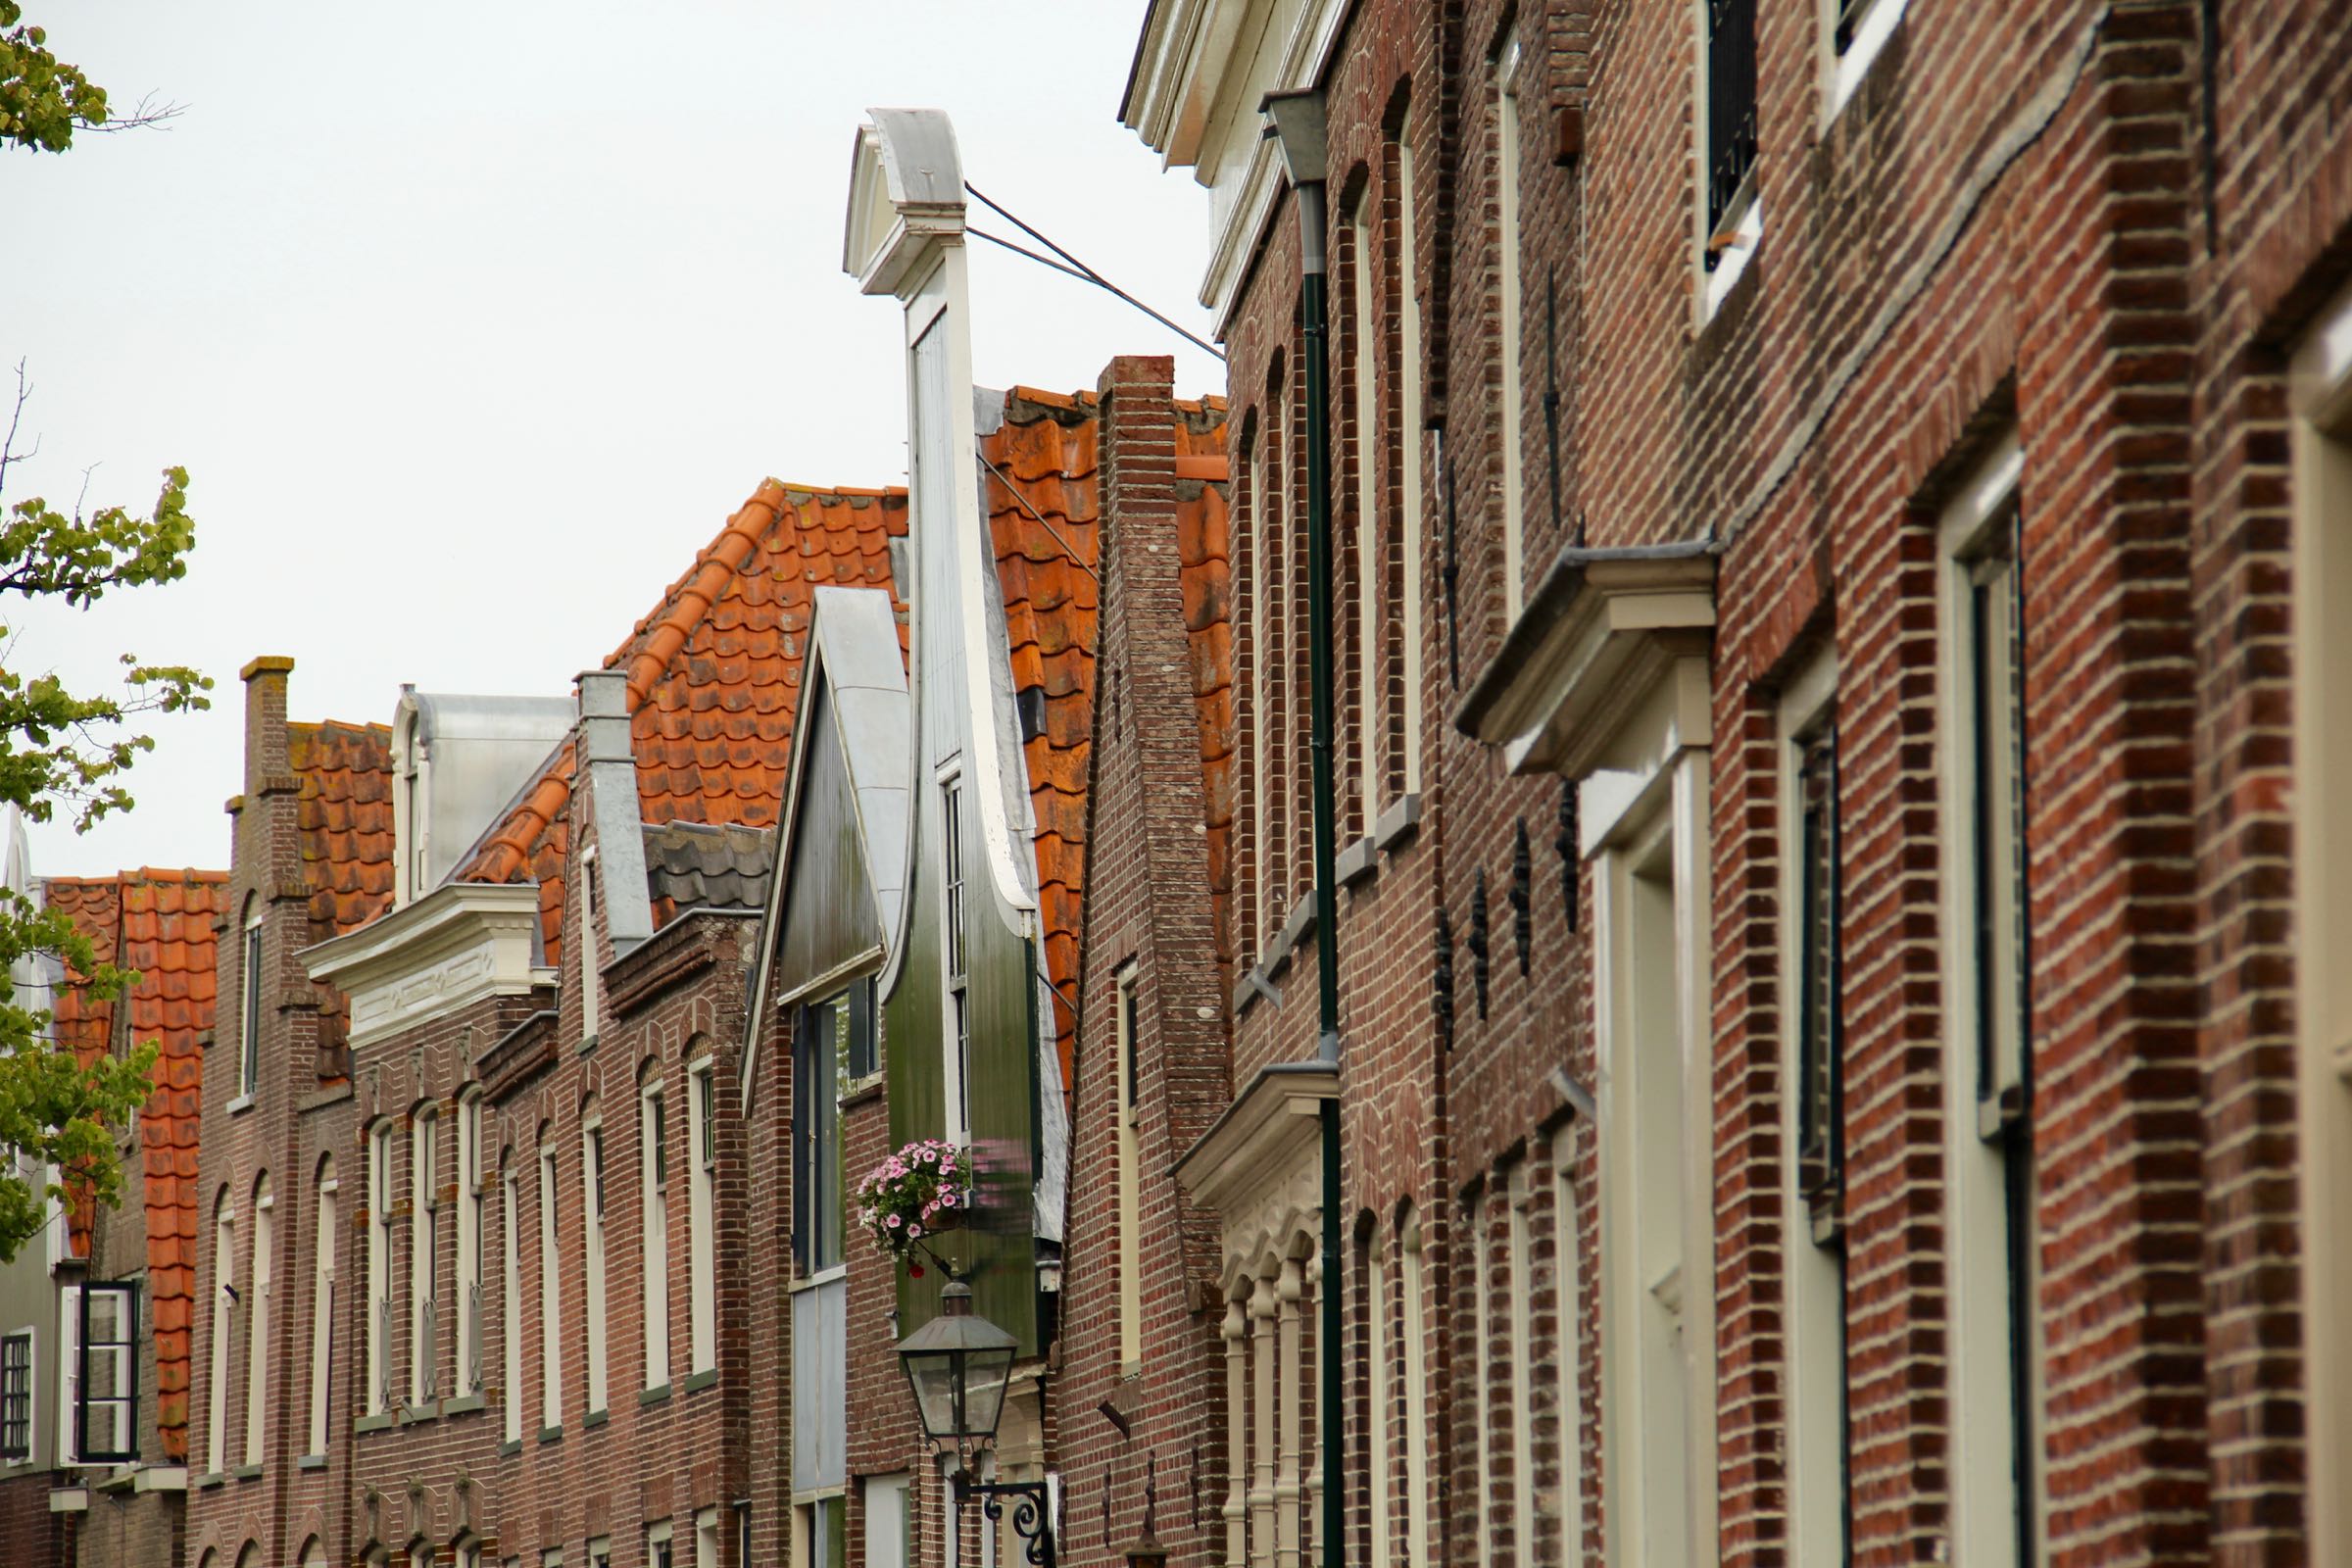 Häuserfront in Edam, Nordholland, Niederlande